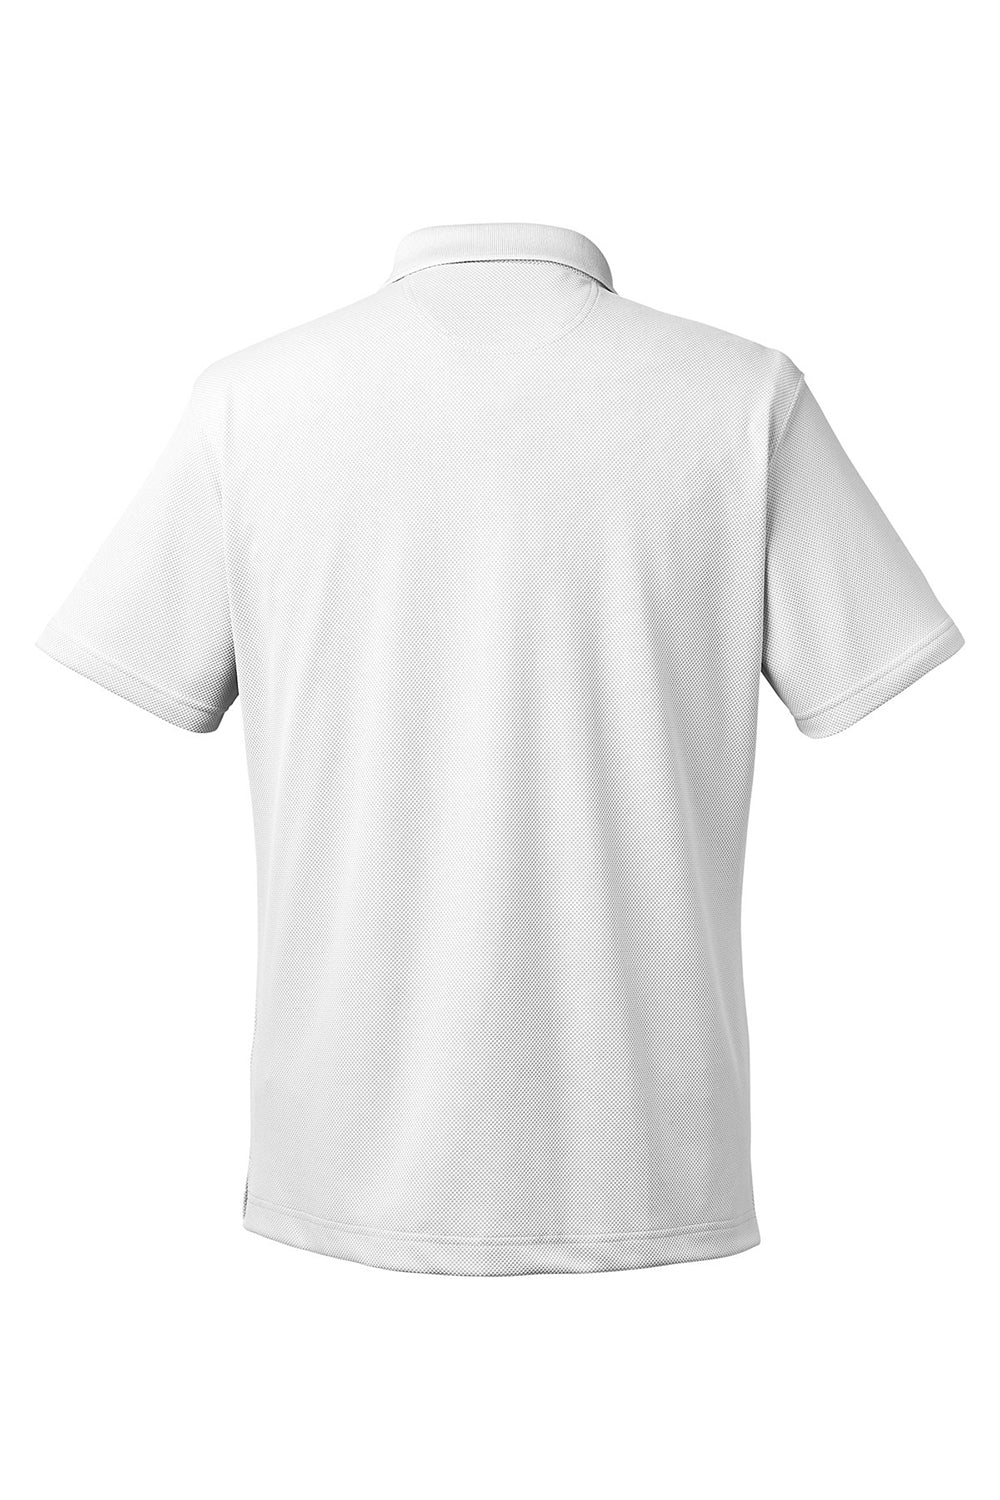 Columbia 1772051 Mens Utilizer Short Sleeve Polo Shirt White Flat Back